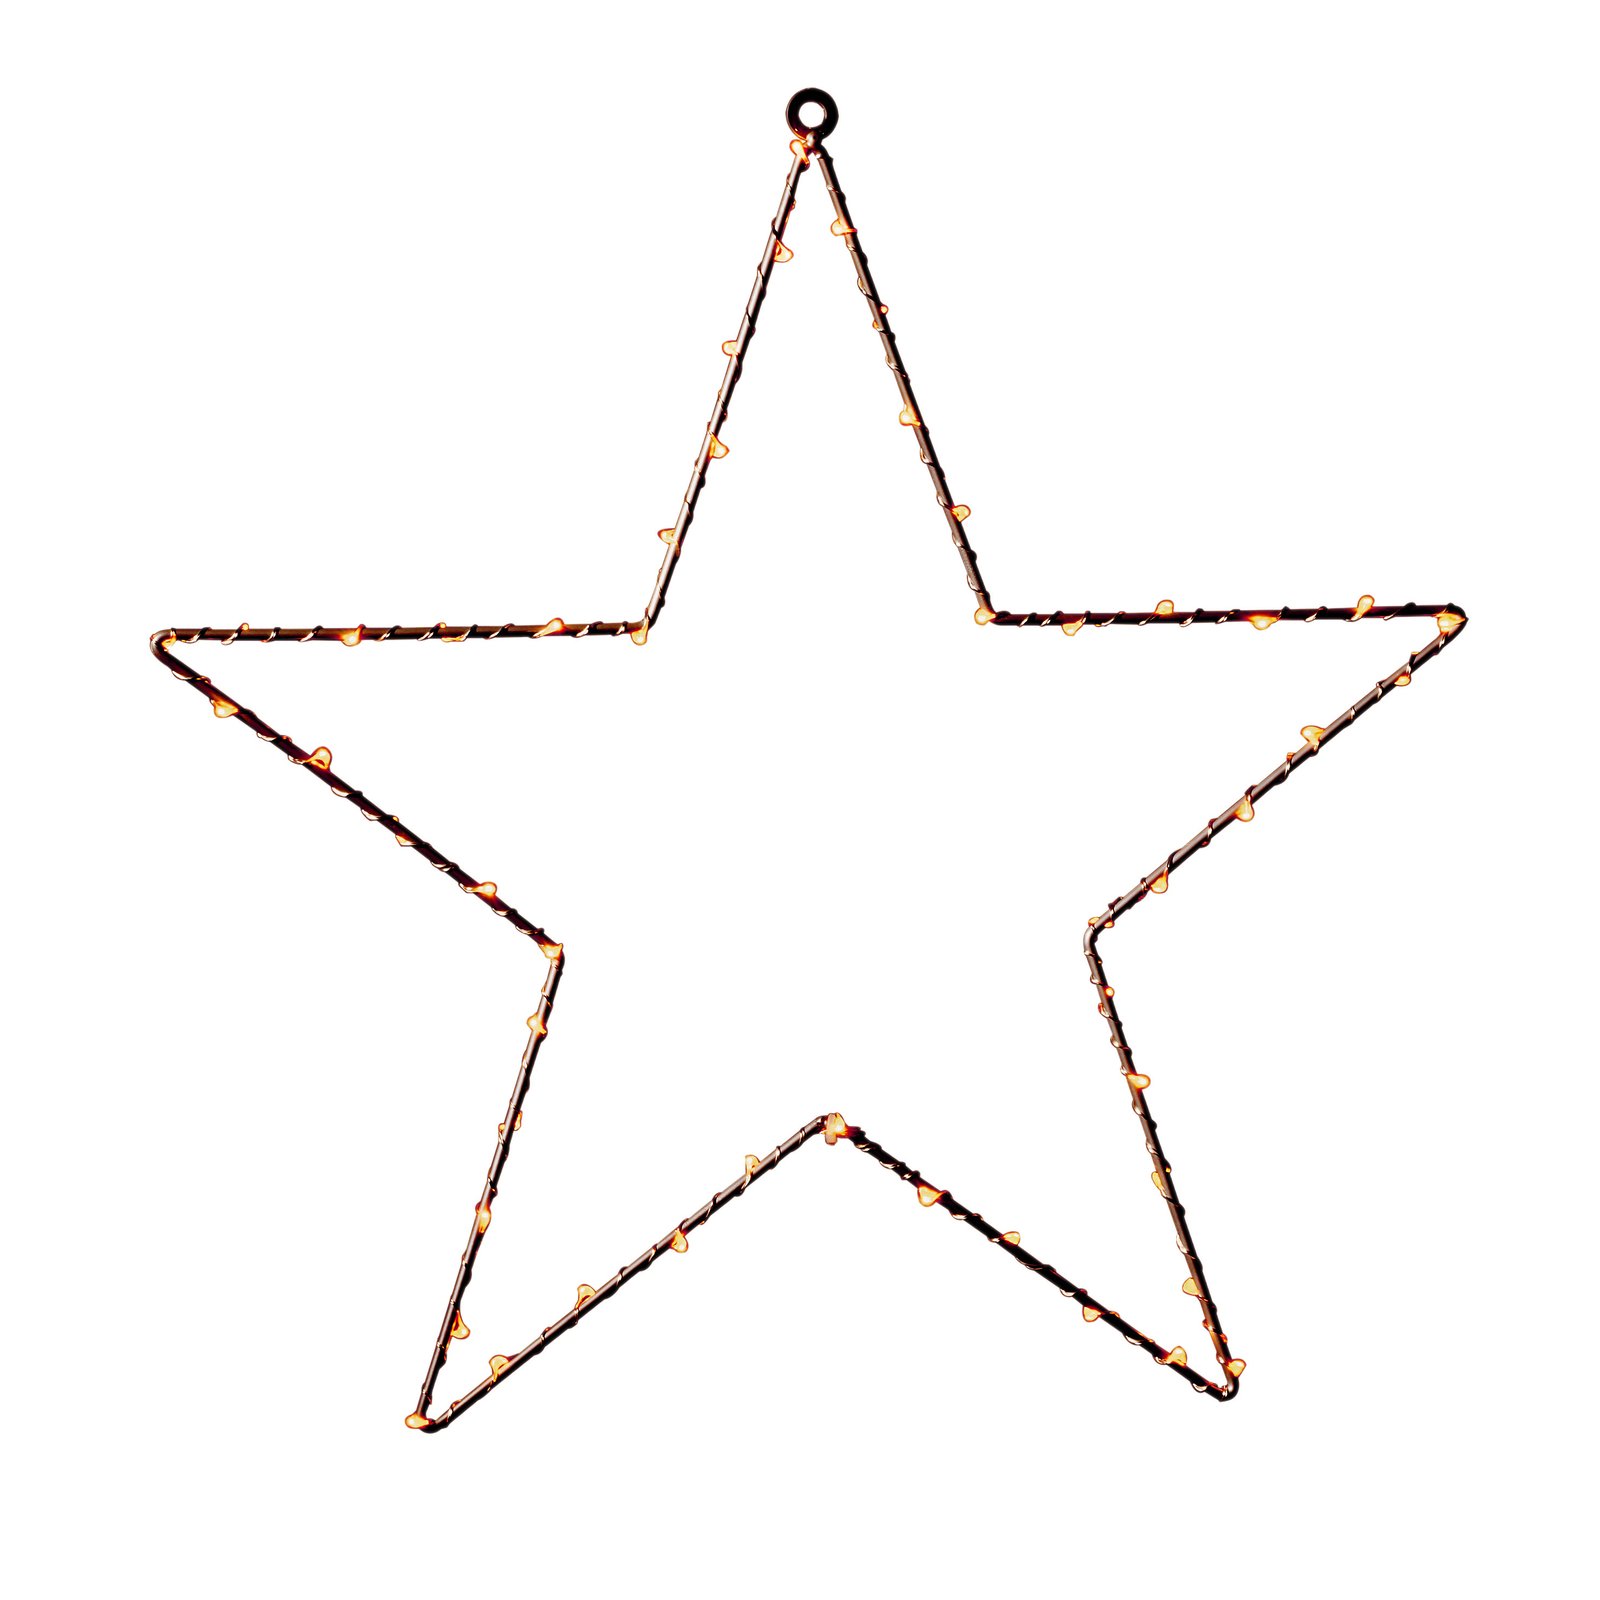 Estrella LED metálica con temporizador, cobre